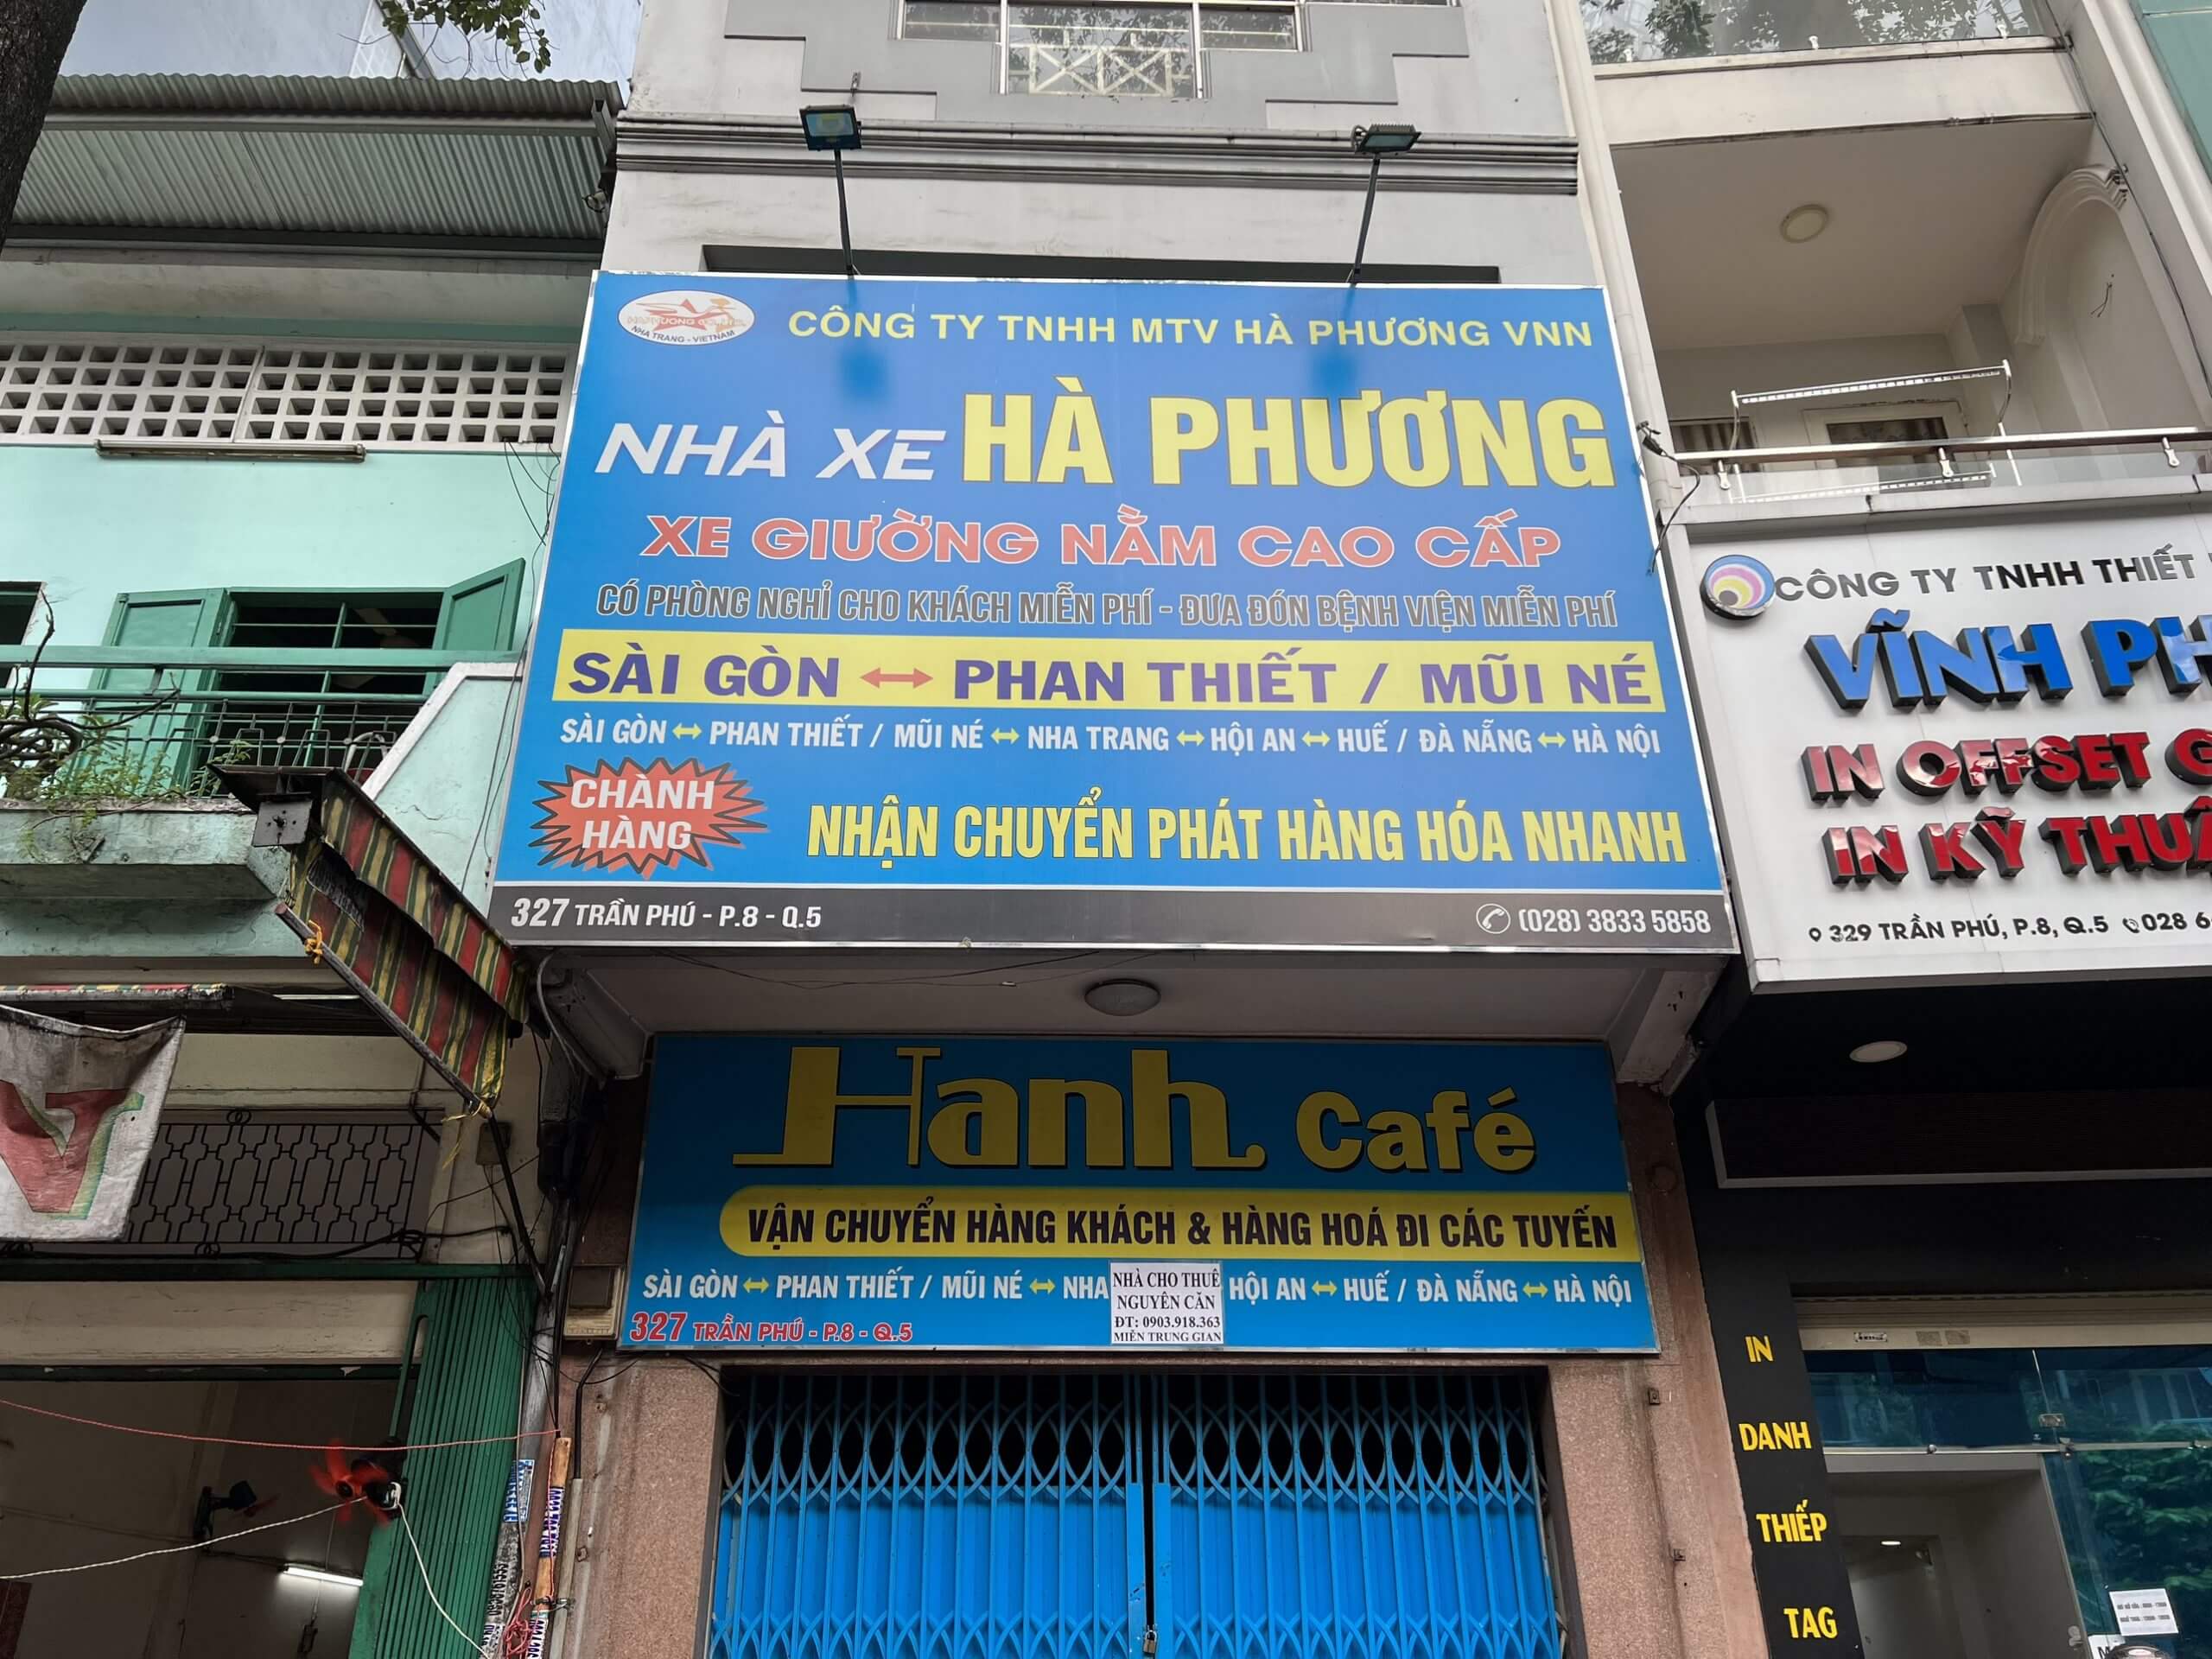 Chi nhánh hà xe Hạnh Cafe